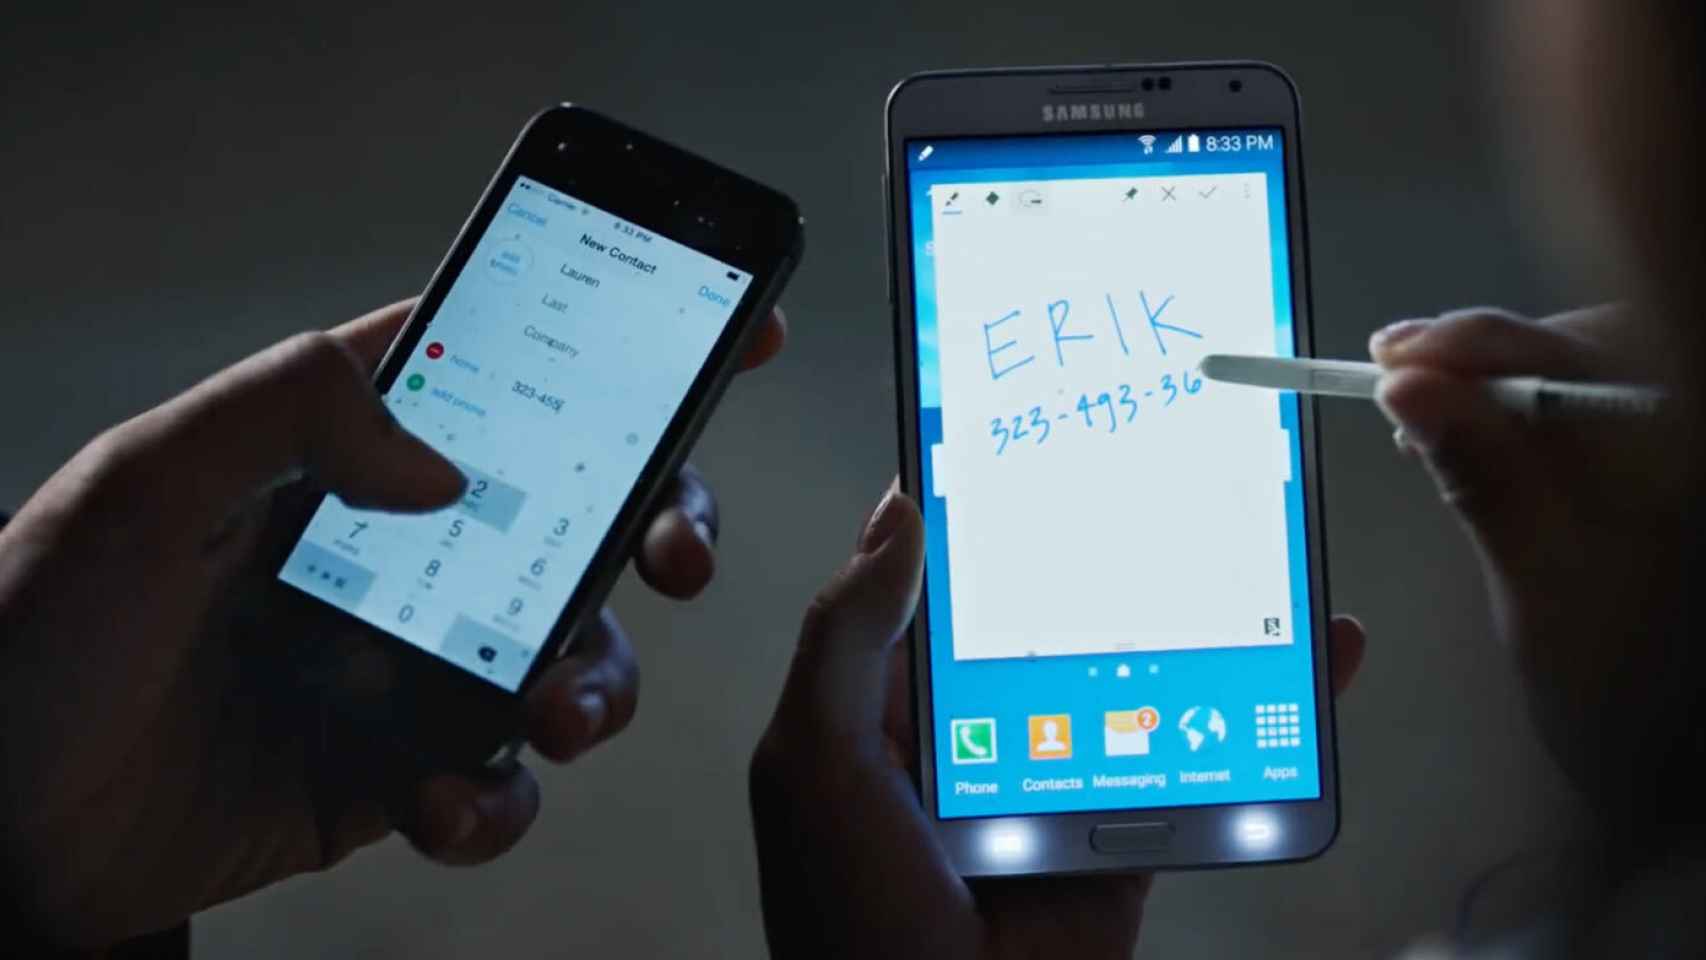 Samsung repasa la evolución del iPhone en un vídeo. ¿Qué opinas?